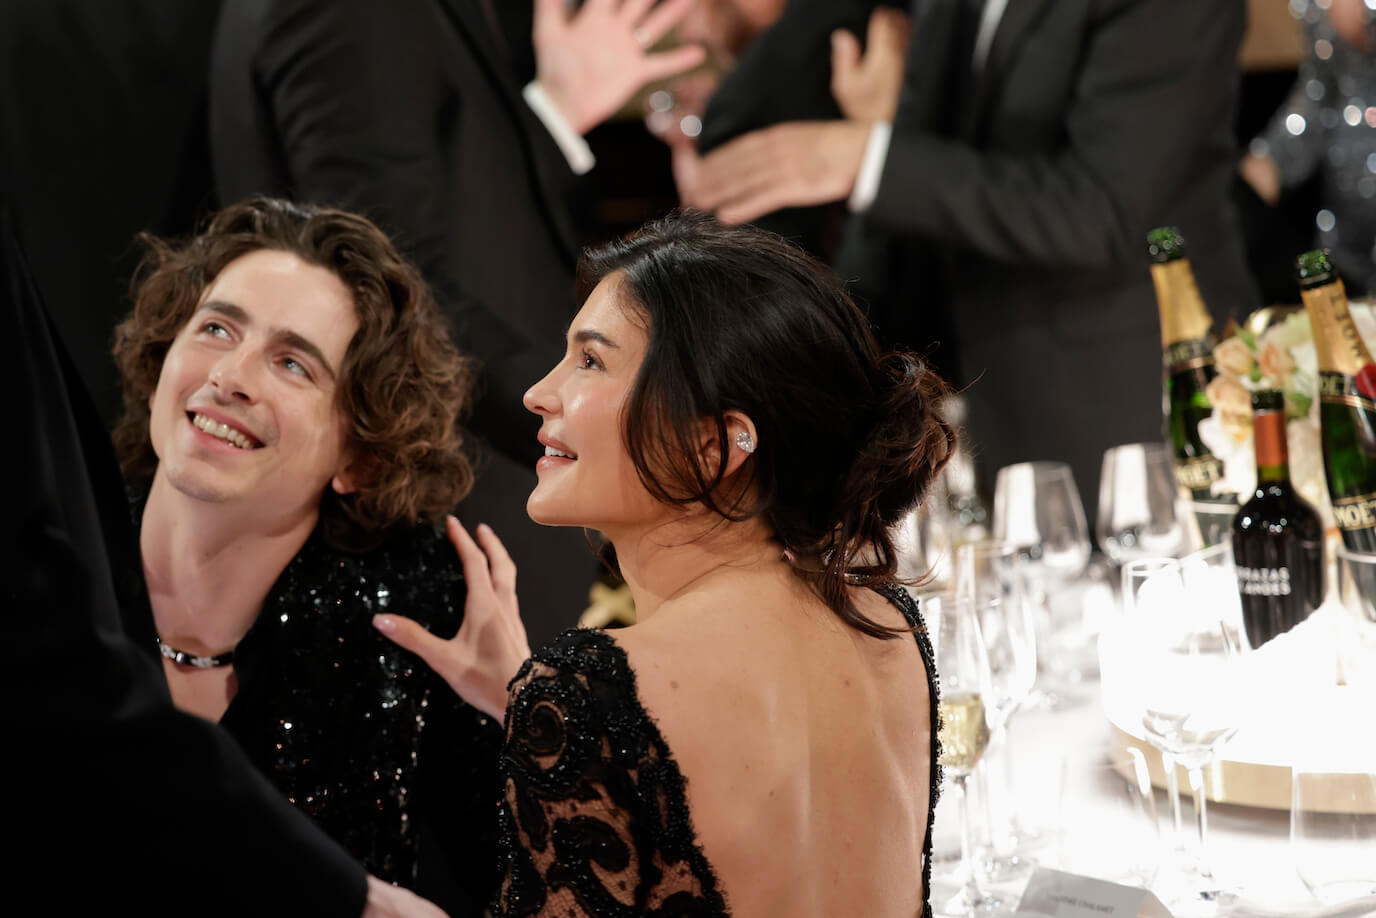 Timothée Chalamet smiling up at Julia Gardner at the Golden Globes. Kylie Jenner is also smiling with her hand on Chalamet's shoulder.